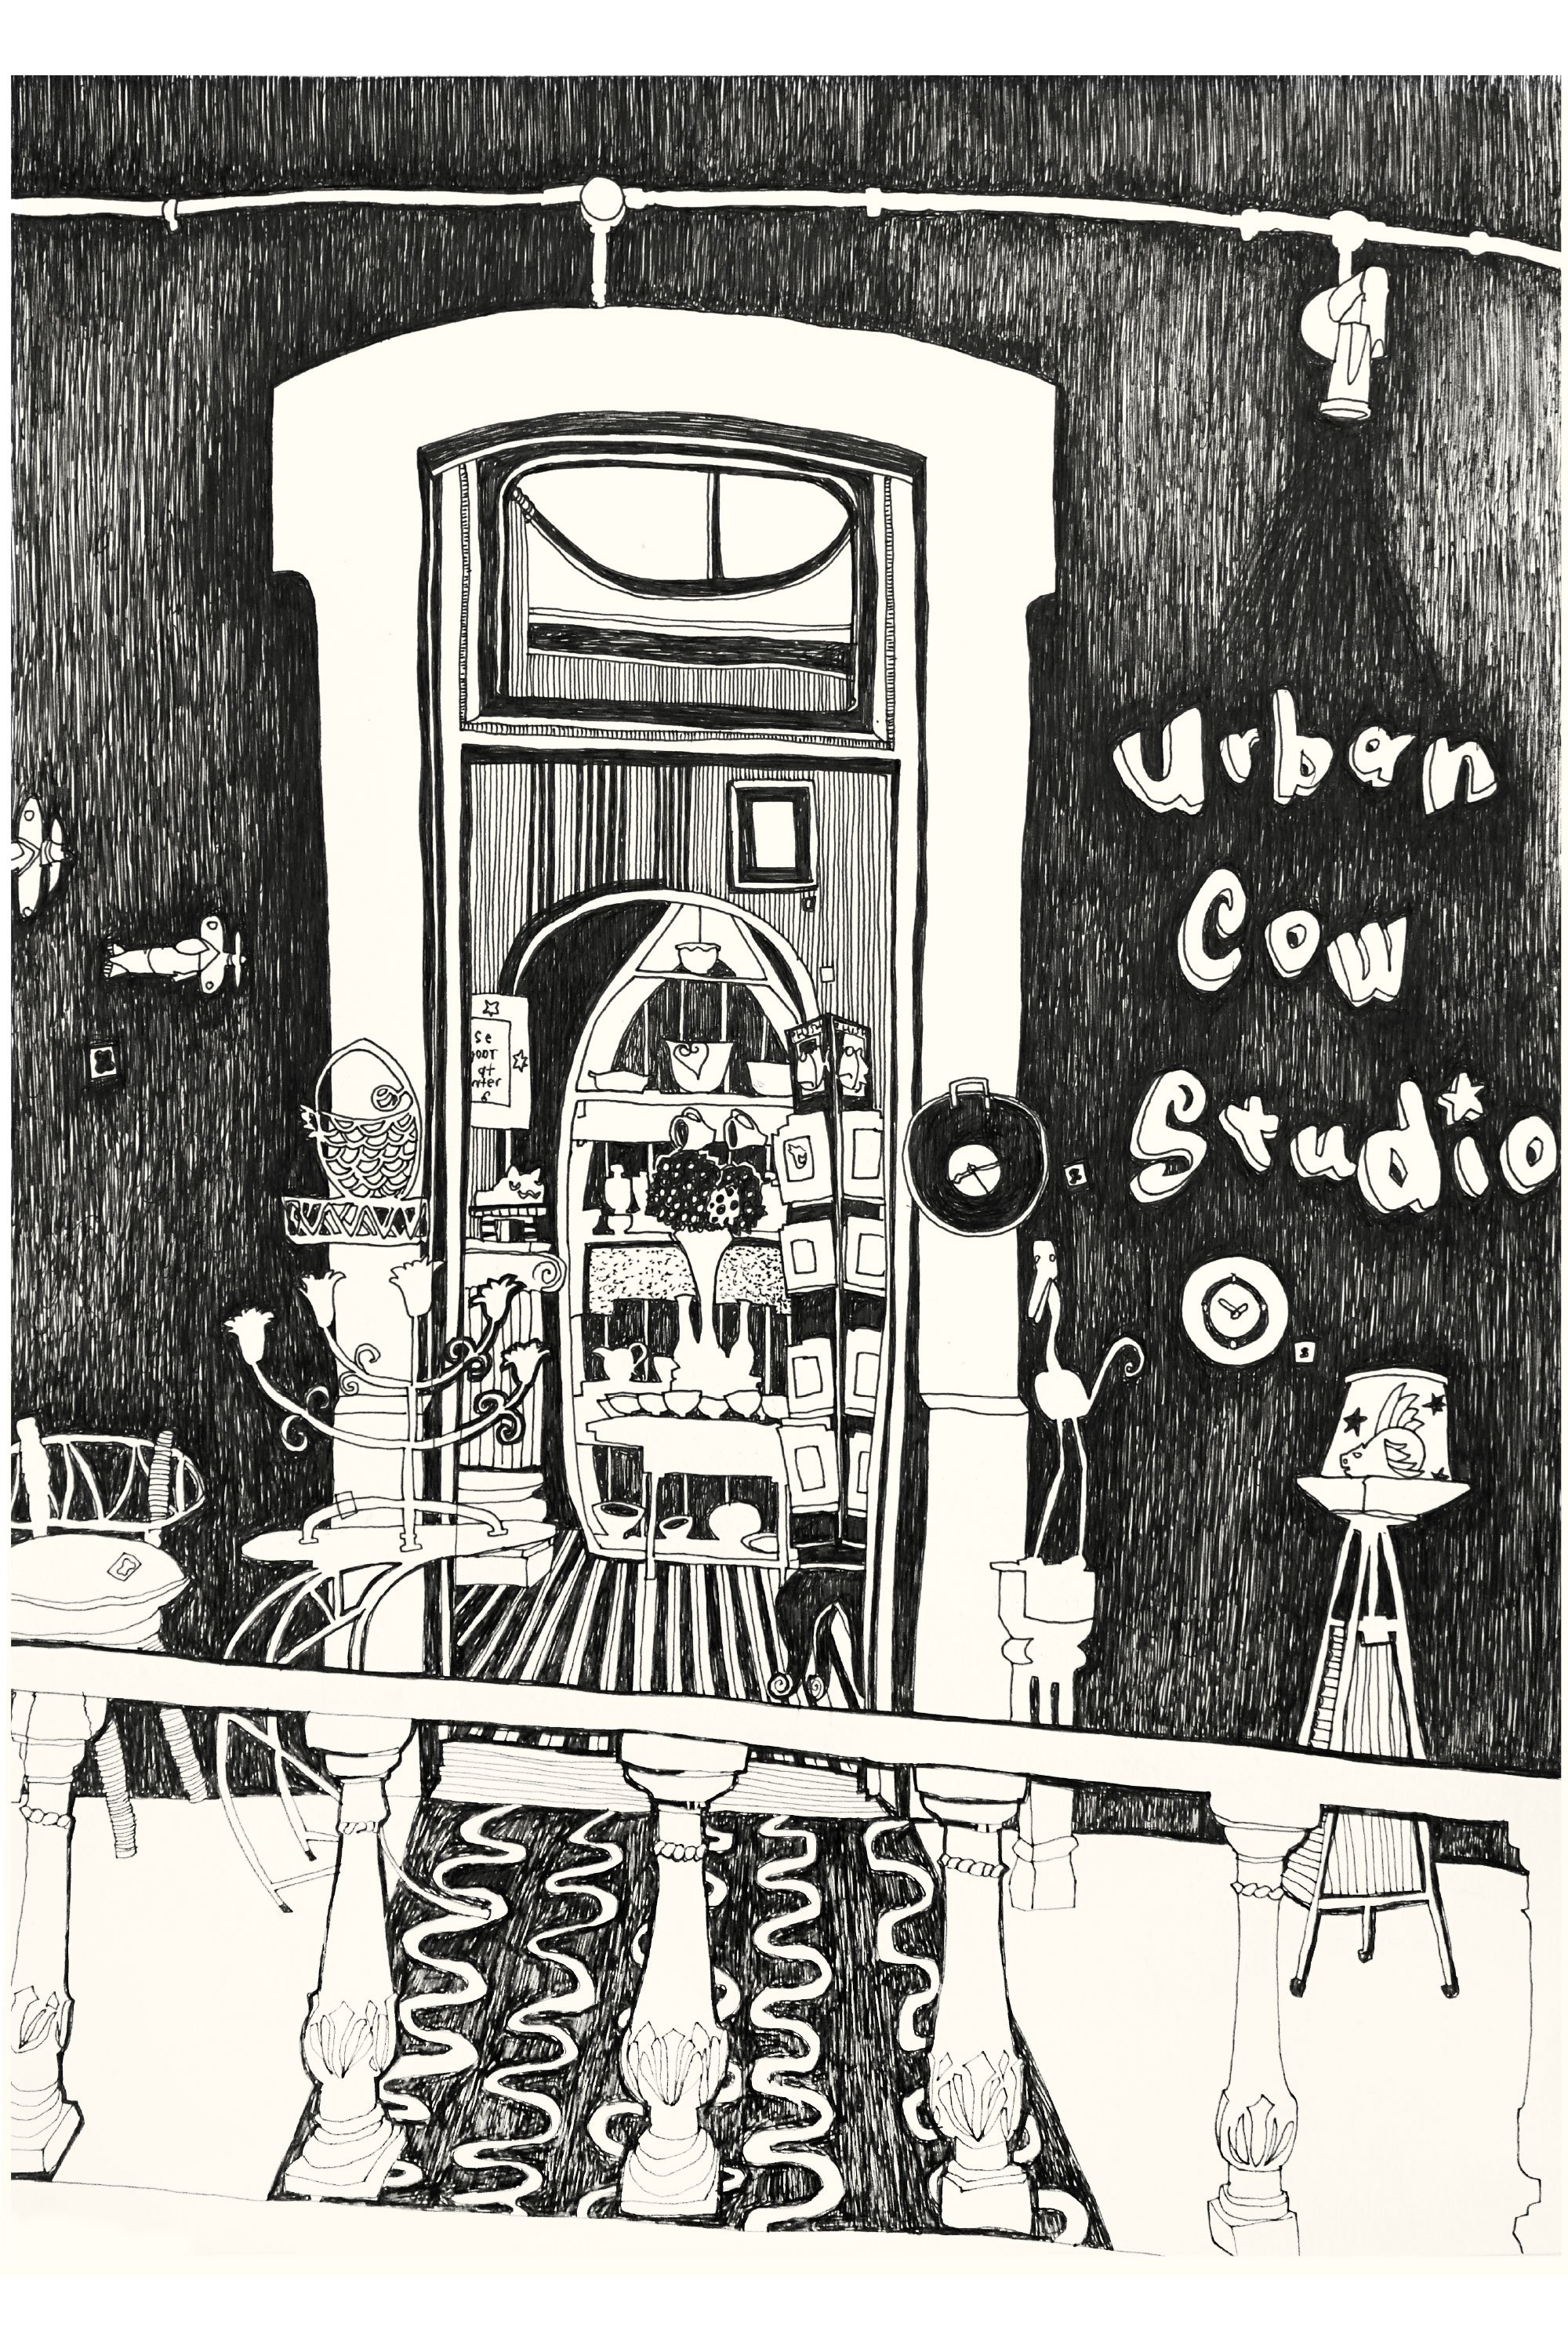 9.Urban-Cow-B+W.jpg